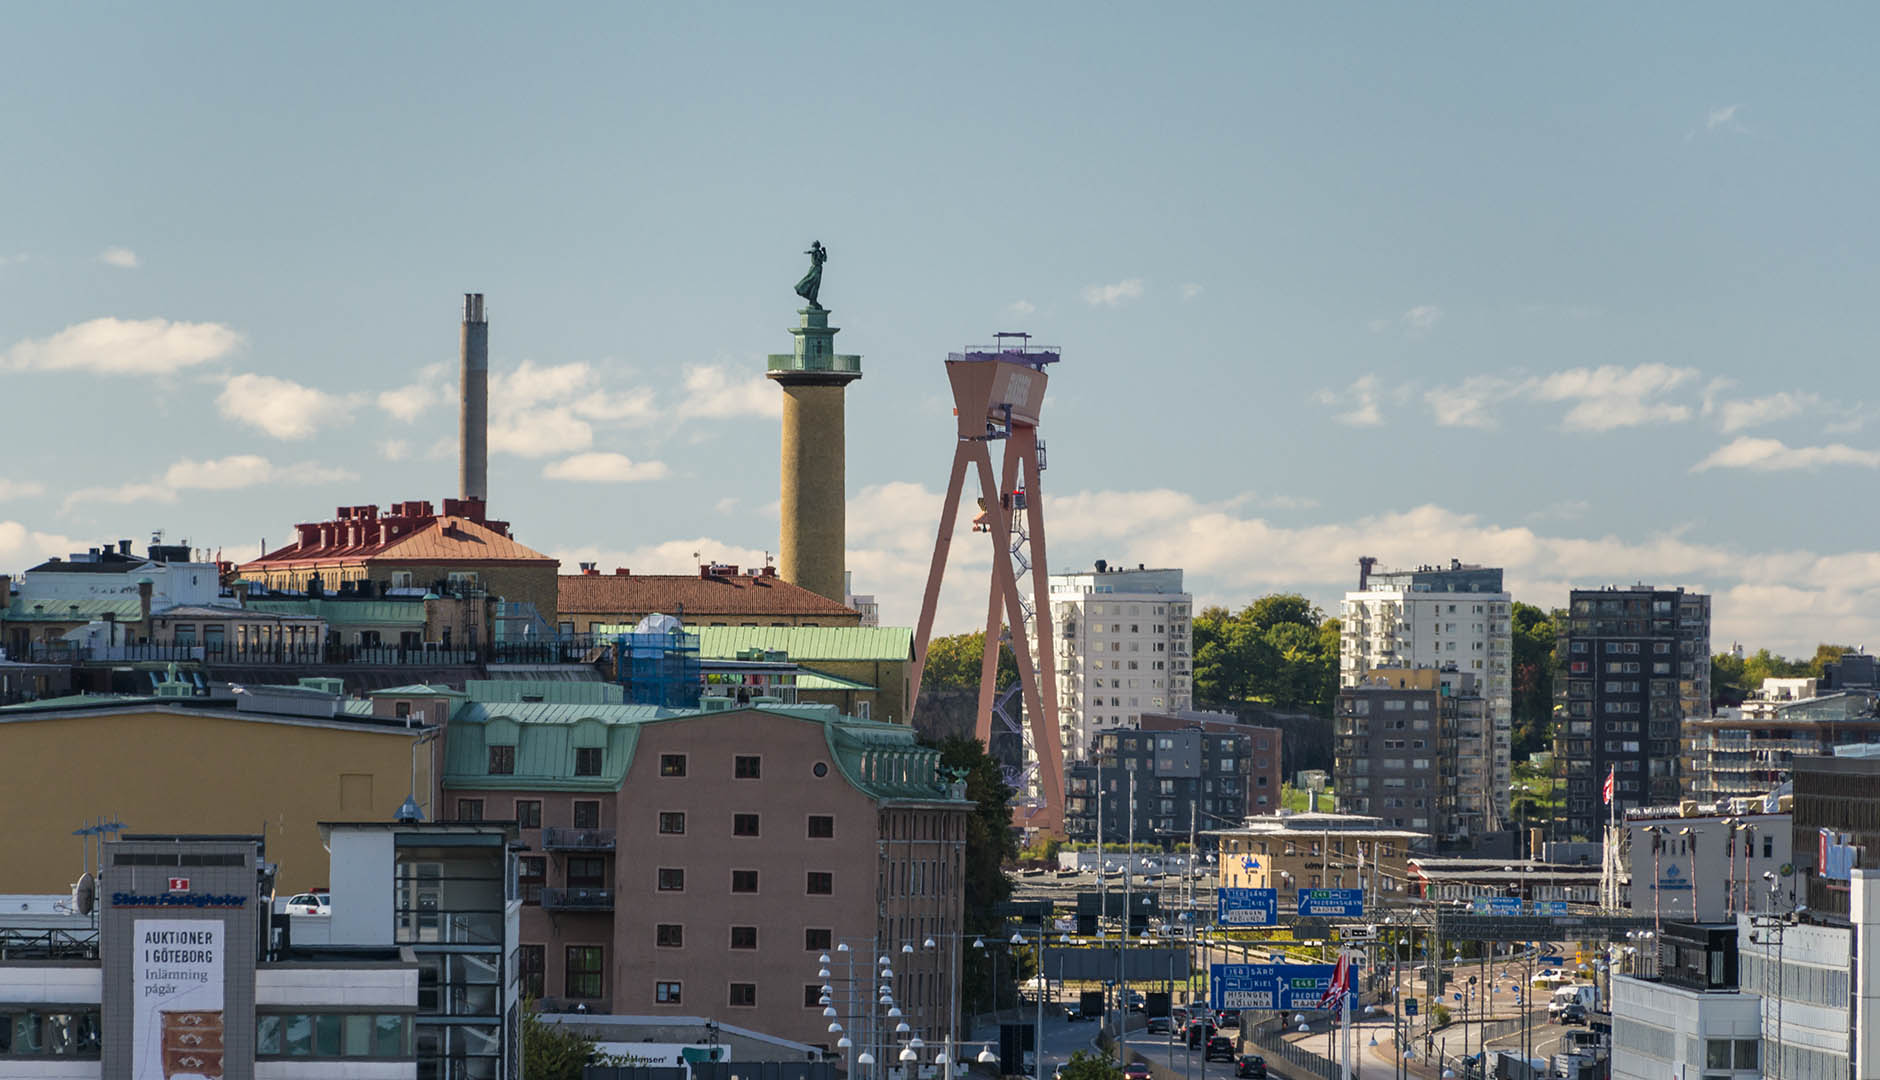 Göteborg med Eriksbergskranen och sjömanshustrun i bakgrunden